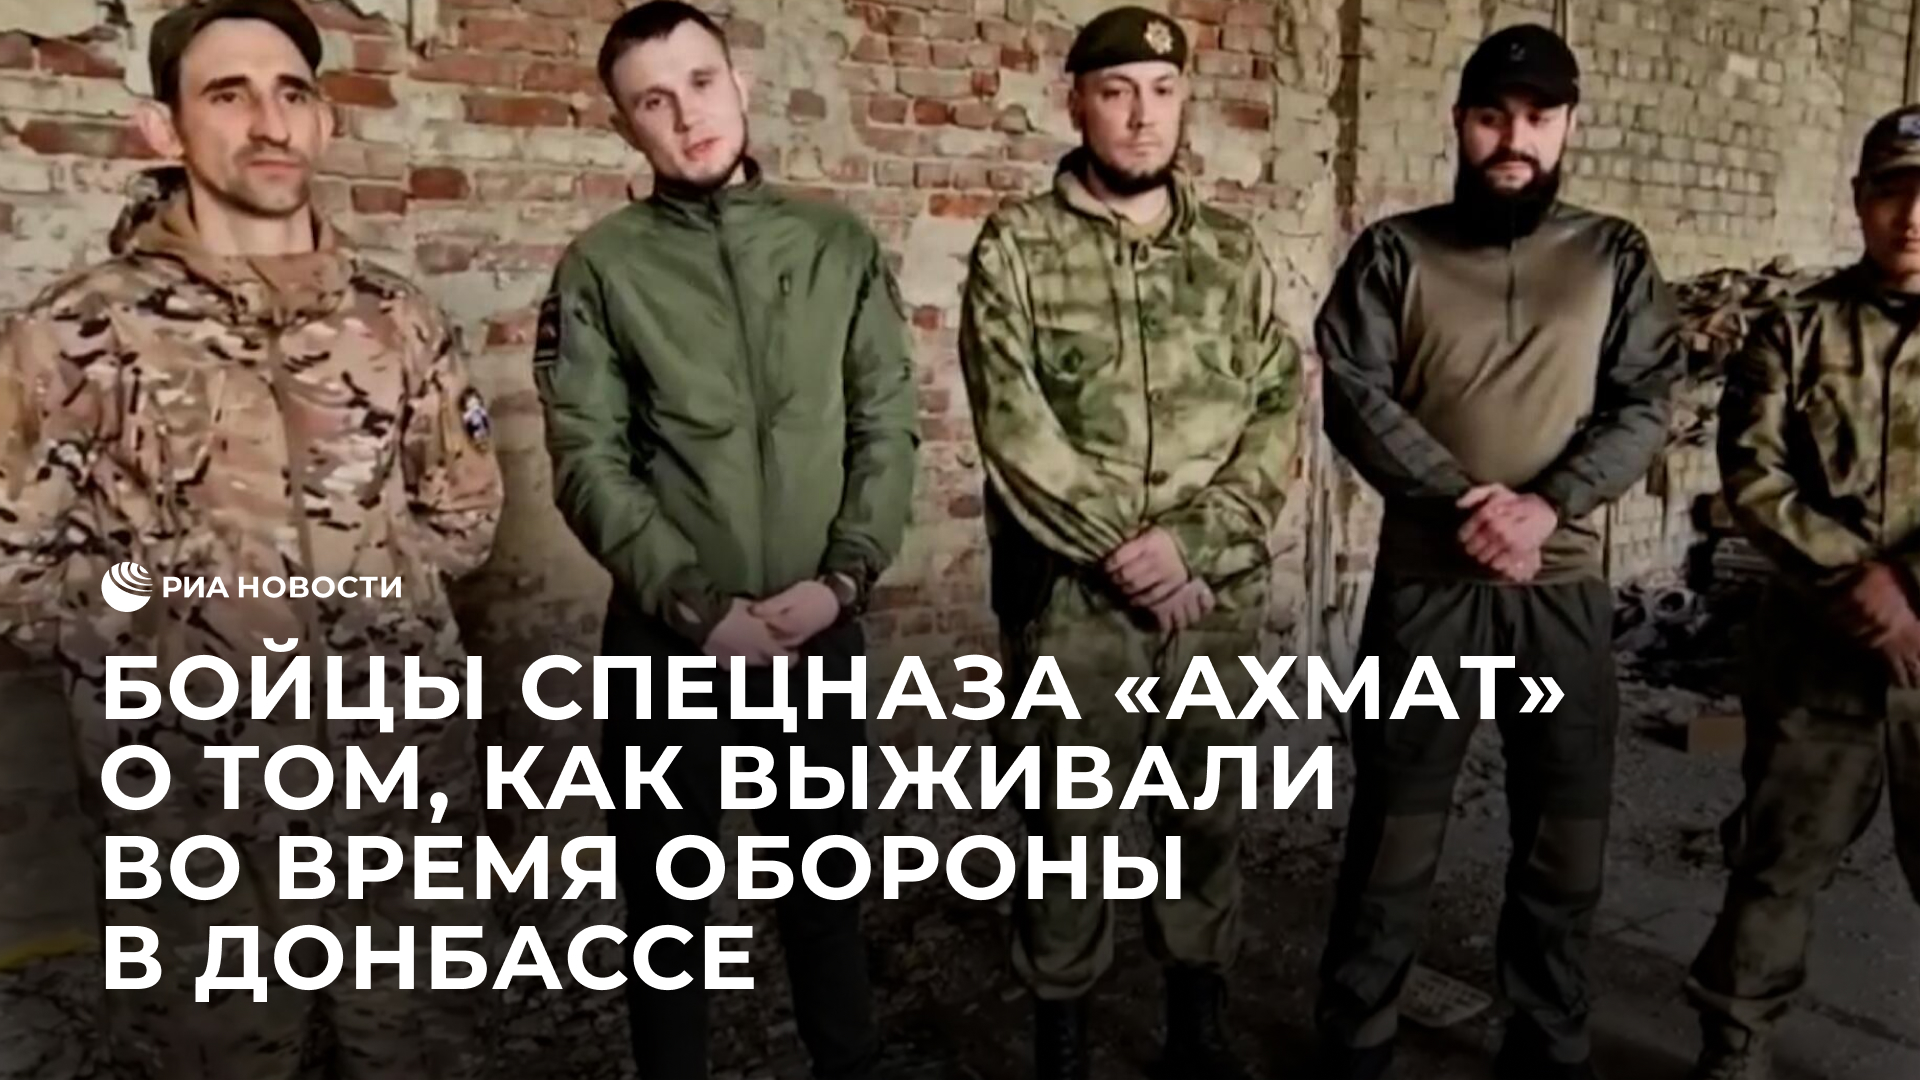 Бойцы спецназа "Ахмат" о том, как выживали во время обороны населенного пункта в Донбассе